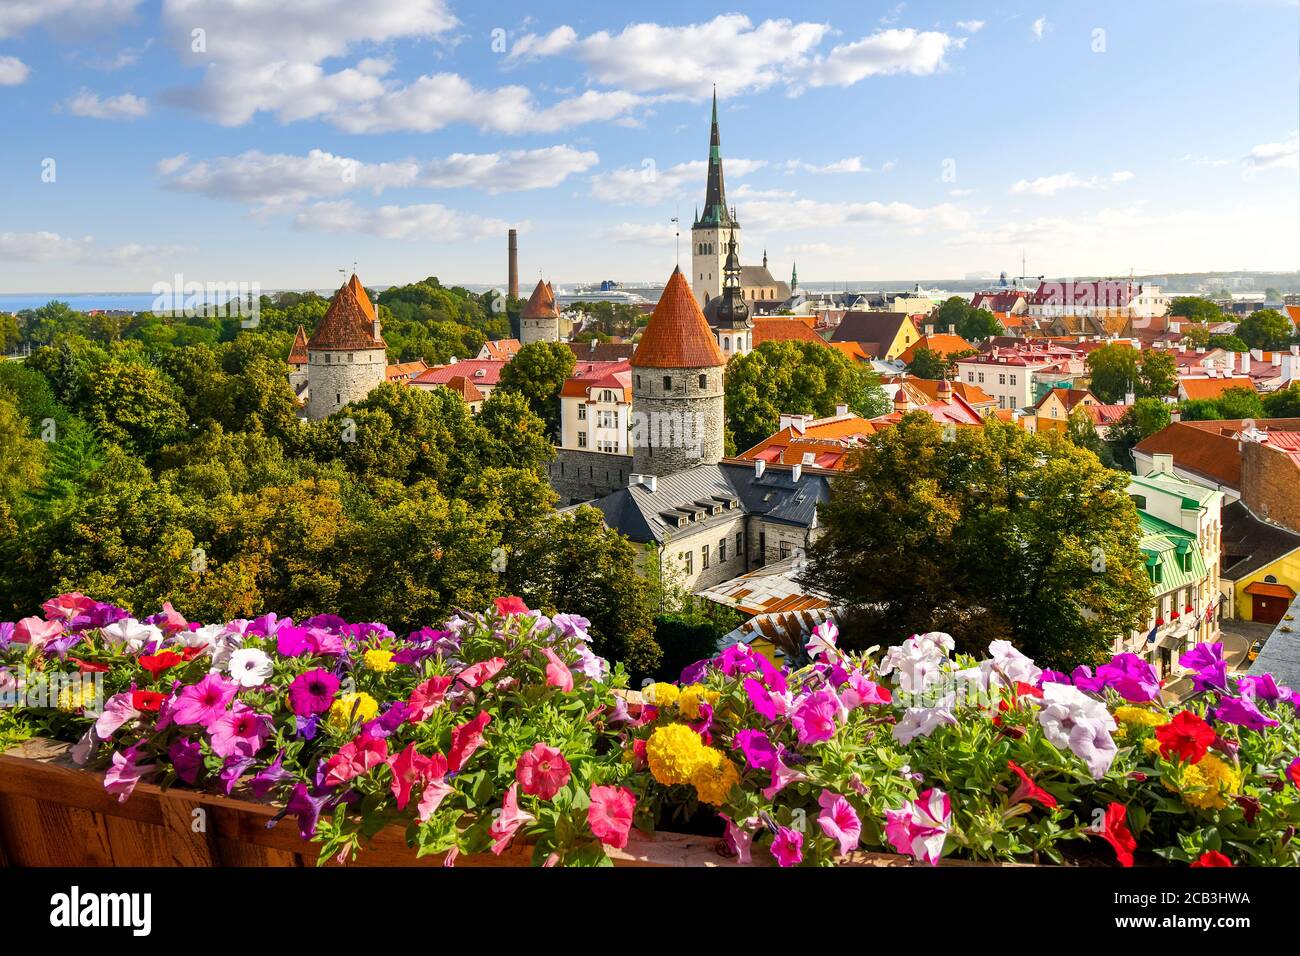 Vue en fin d'après-midi depuis la colline de Toompea surplombant la ville médiévale fortifiée de Tallinn Estonie le long de la côte Baltique de l'Europe du Nord. Banque D'Images